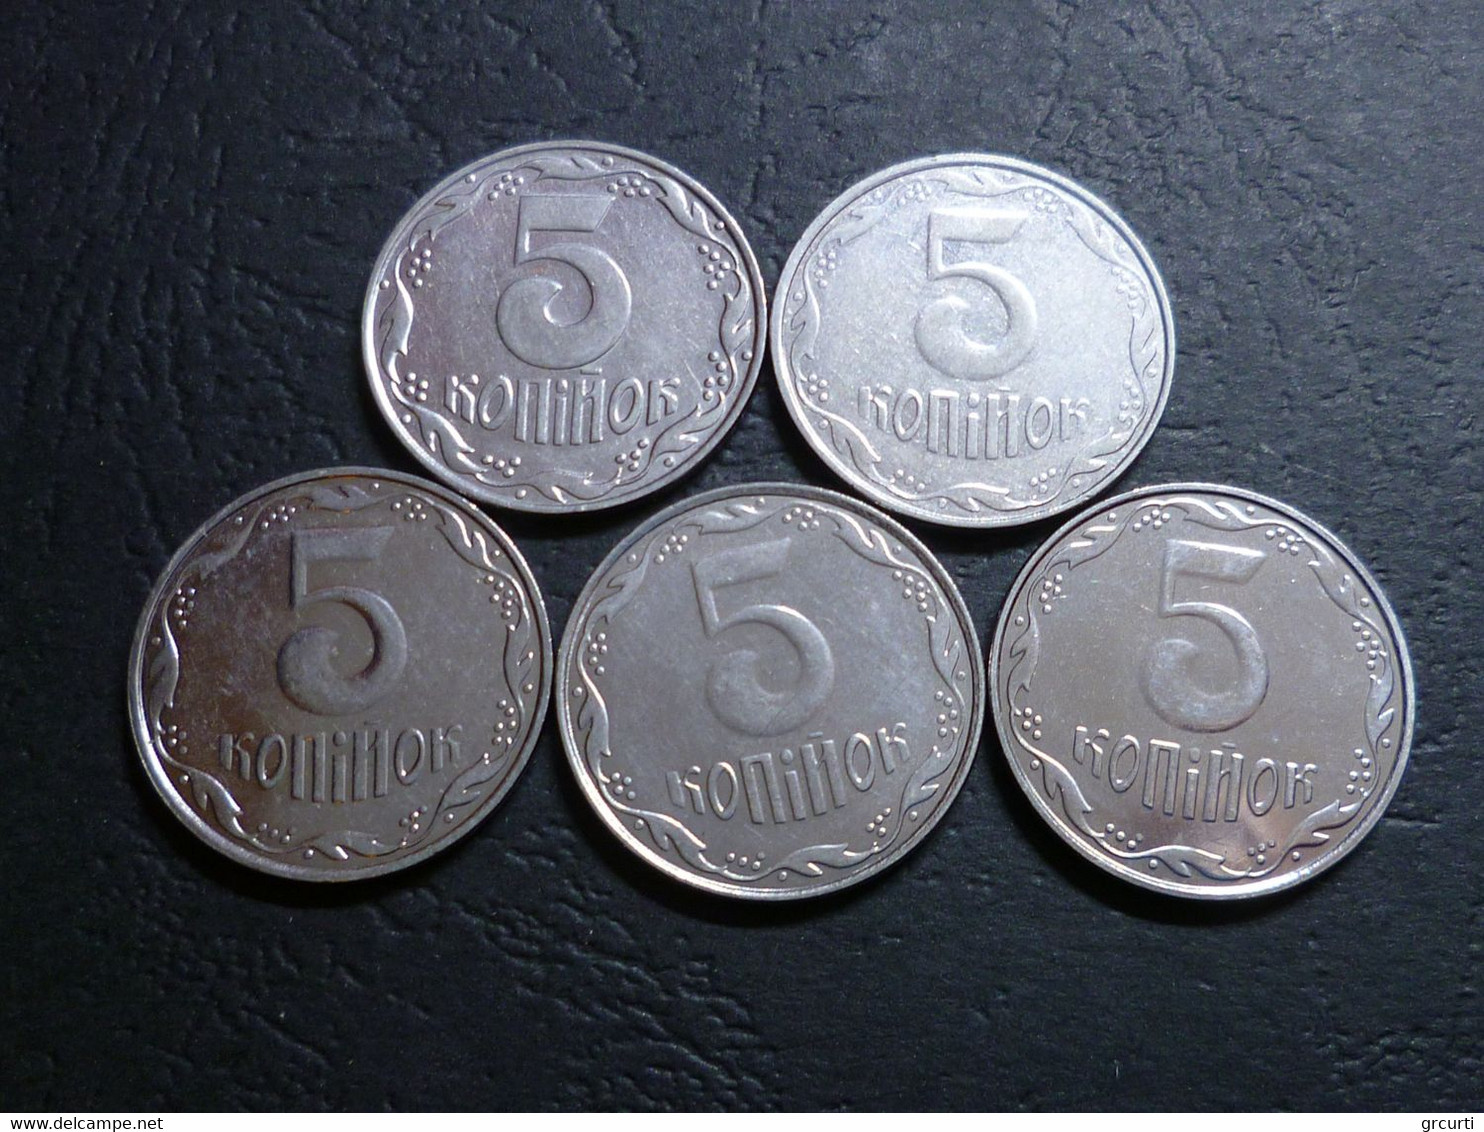 Ucraina - Lotto di 43 monete moderne  - 1992-2014